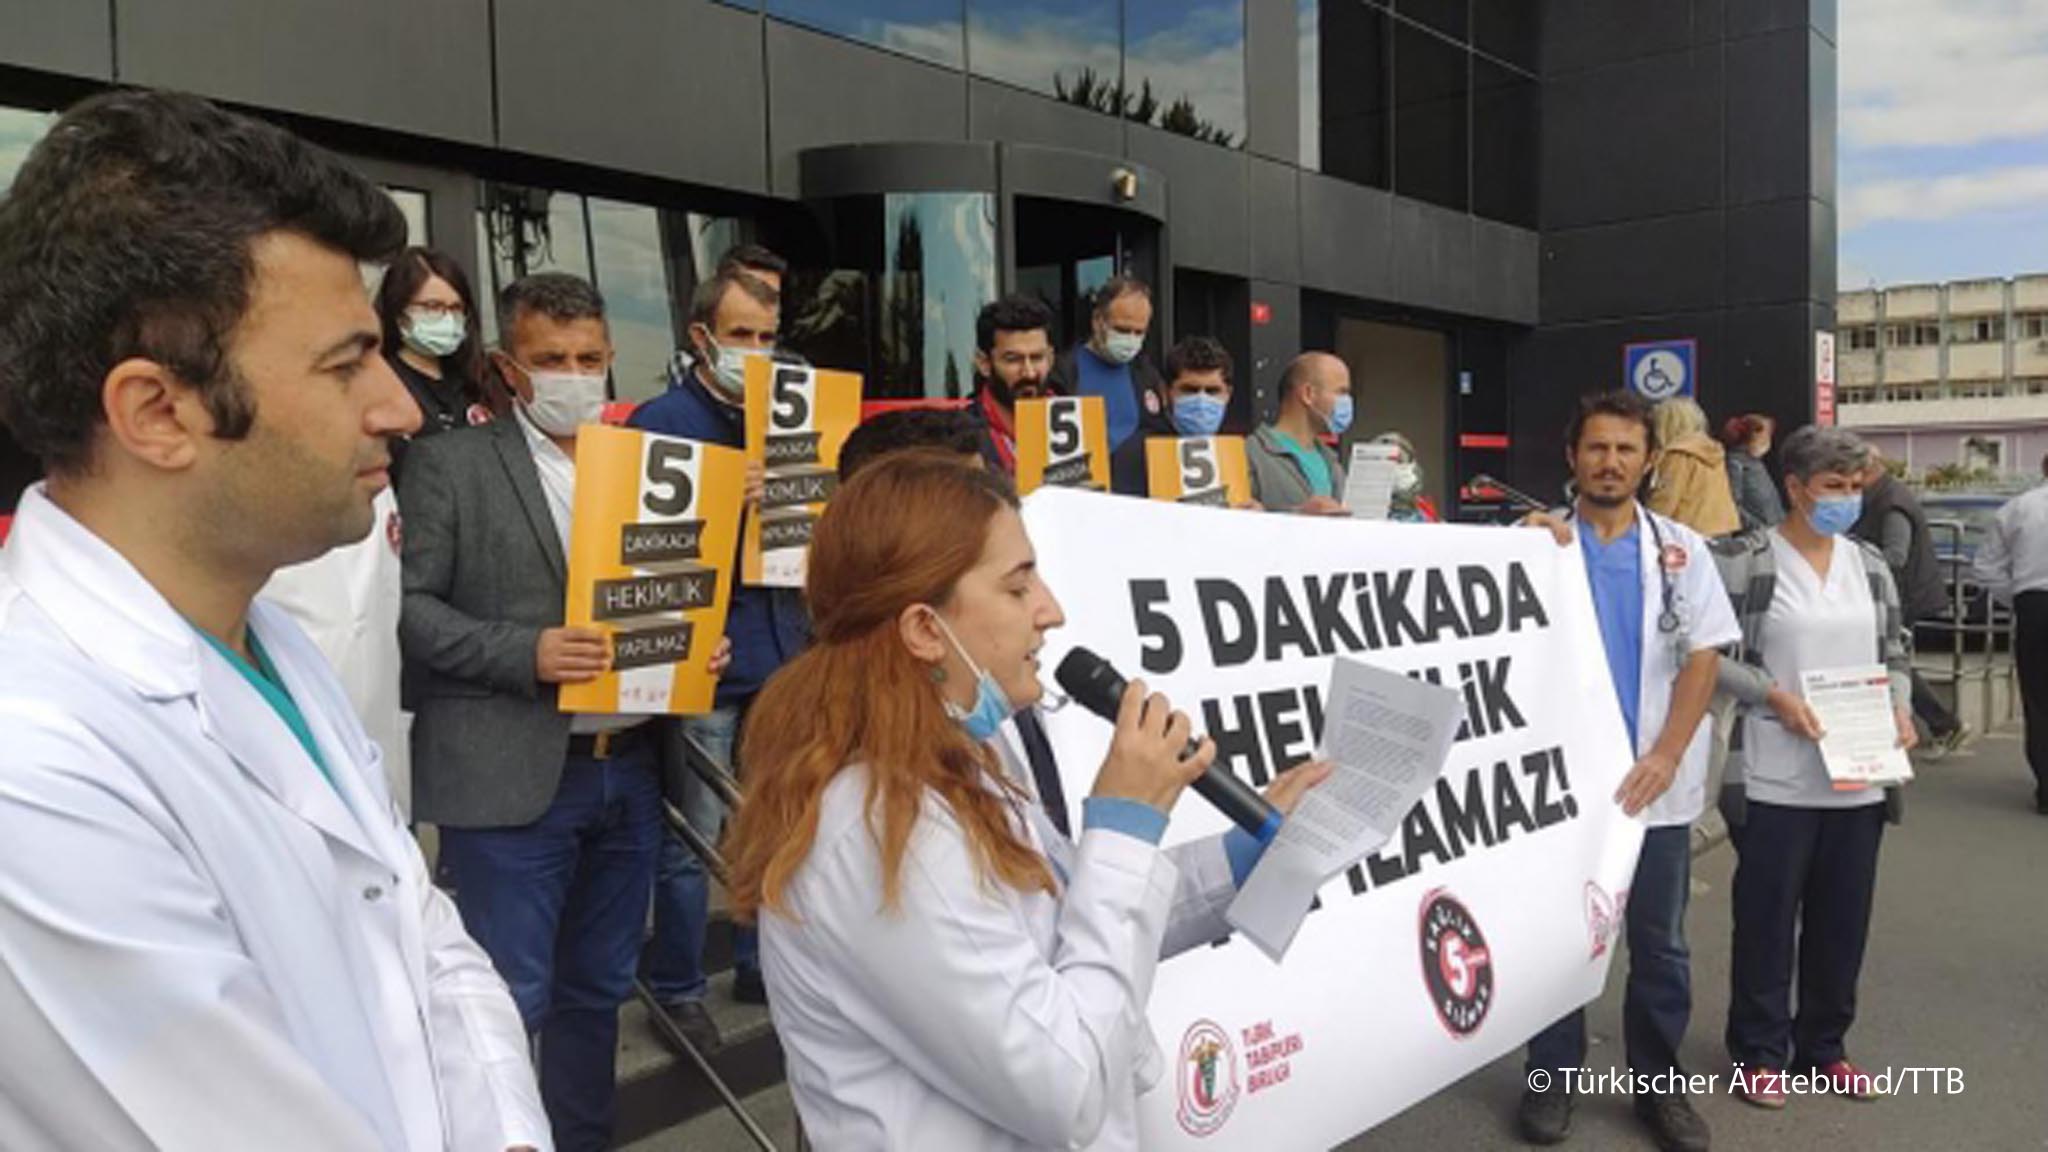 أطباء يحتجون على أنّ لديهم وقتاً قصيراً للغاية من أجل كل مريض - تركيا. Doctors protesting about the short time allocated to them for each patient's visit (photo: Turkish Doctors' Union (TTB)